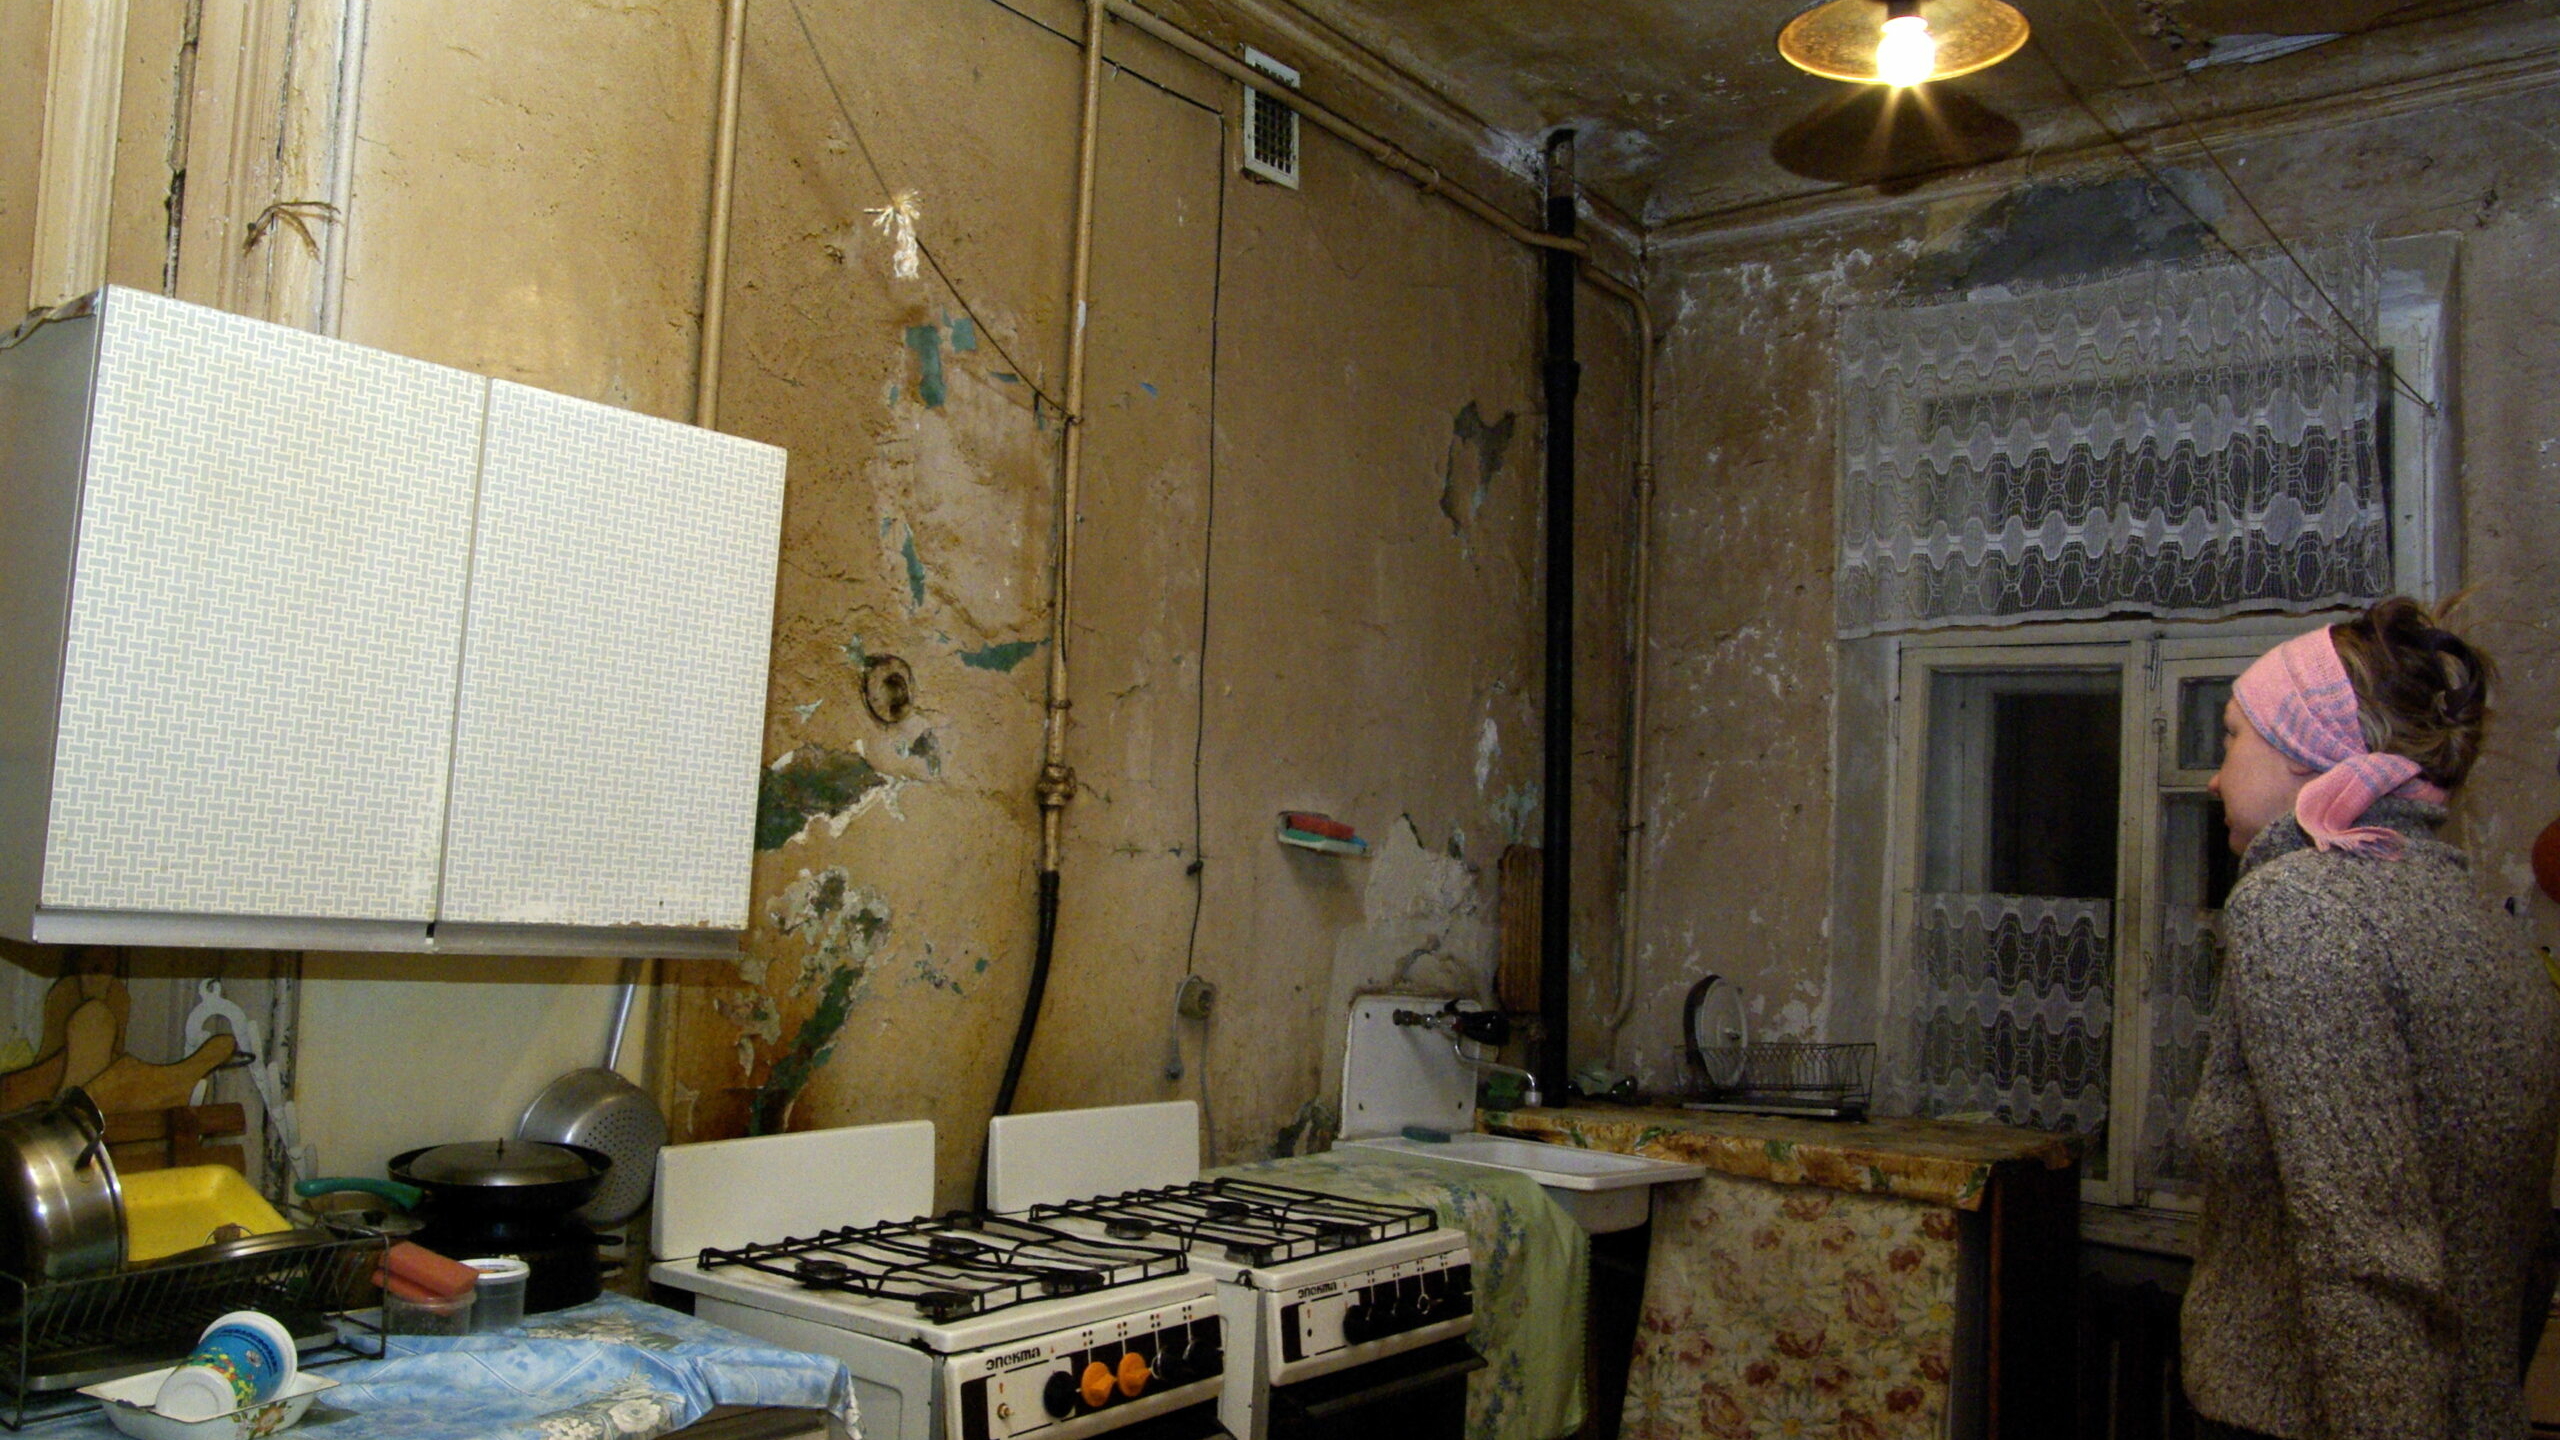 Проблему коммуналок в Петербурге может решить перепланировка в квартиры-студии